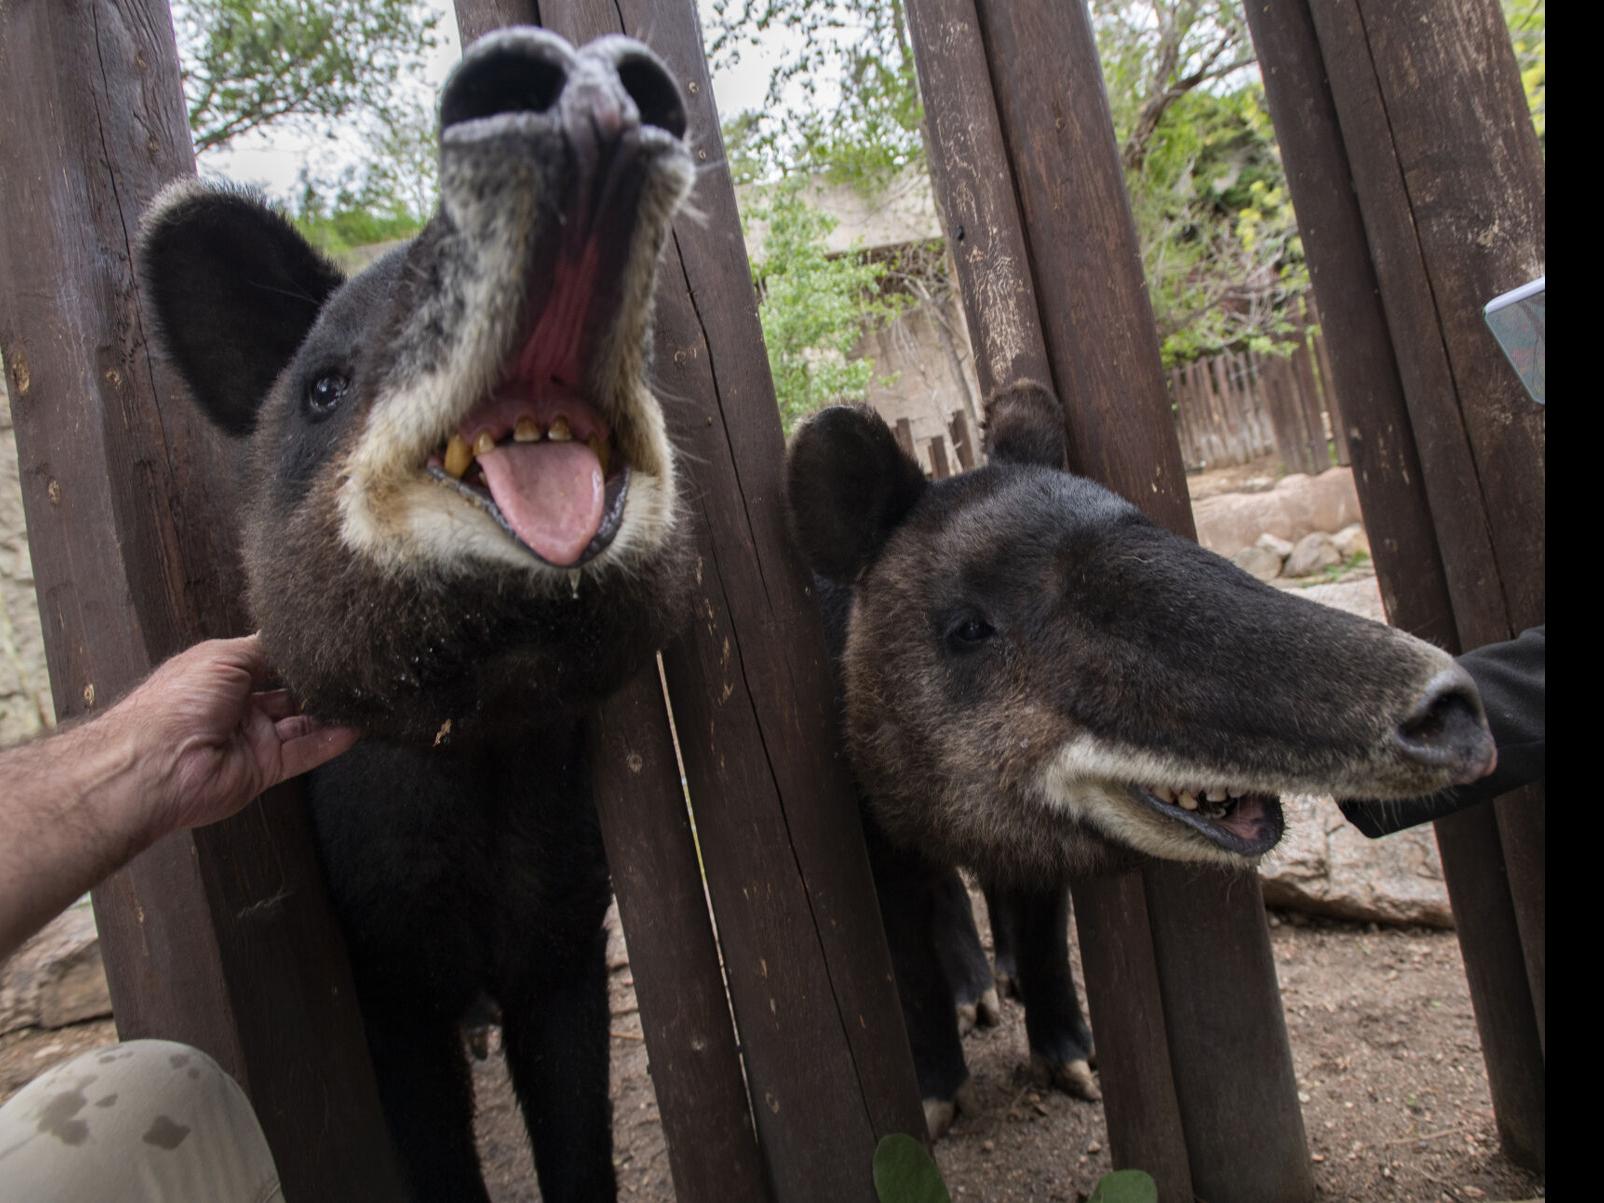 baby tapir tongue